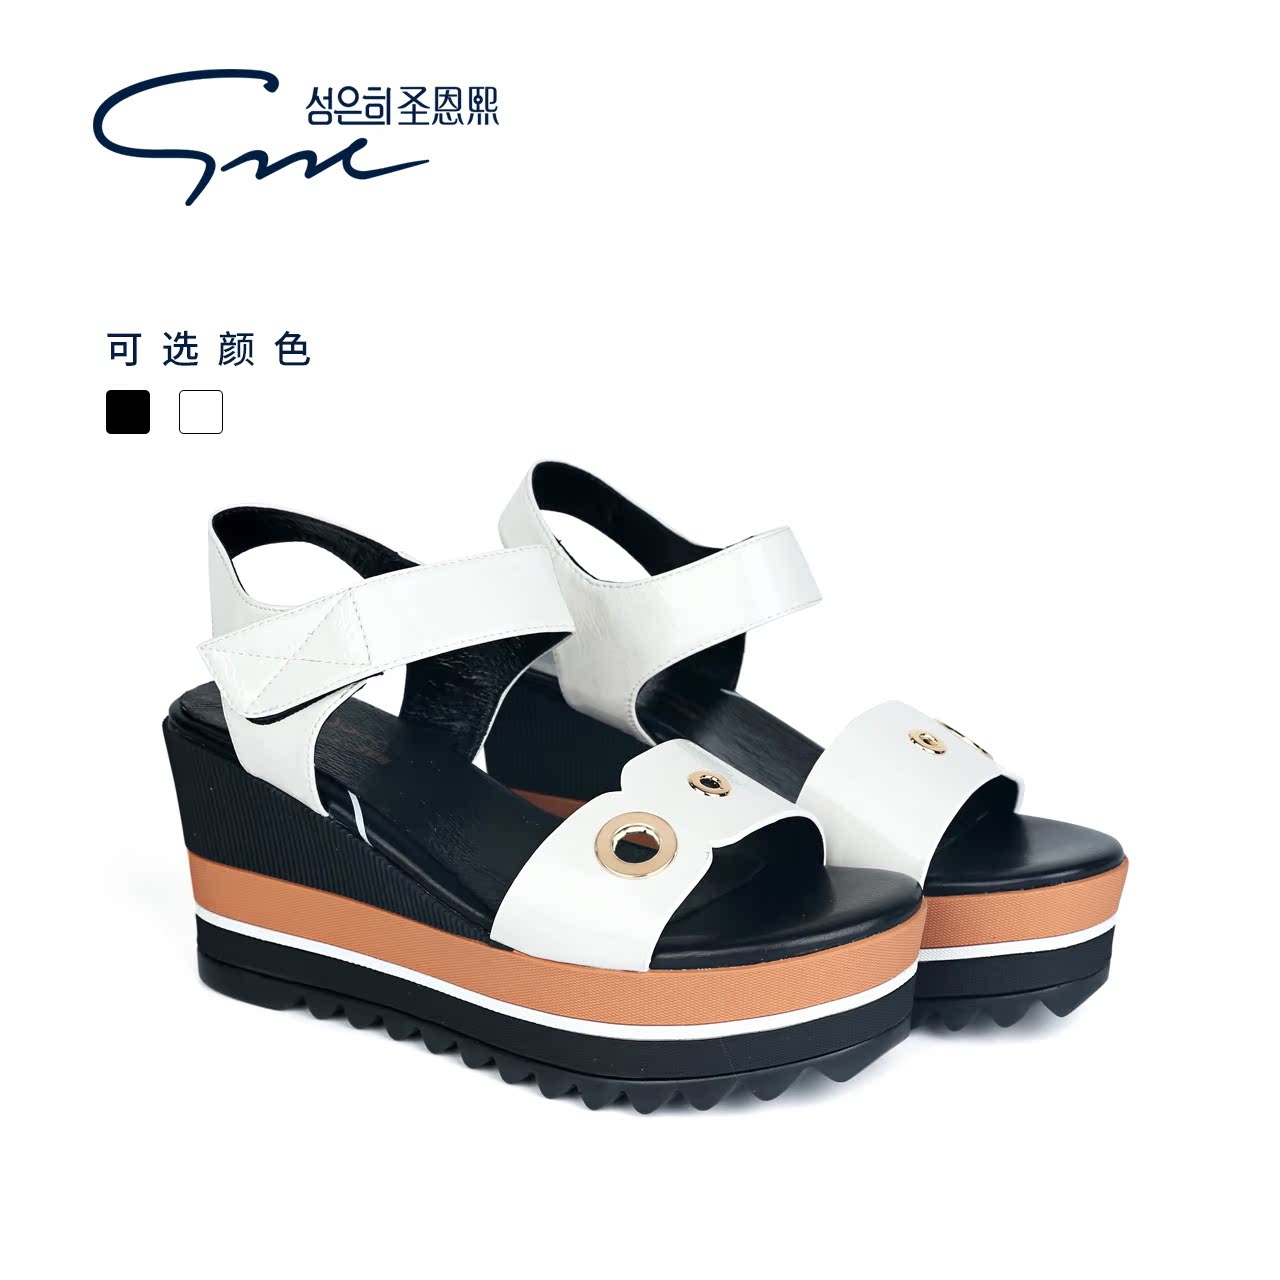 精选网 女鞋品牌 圣恩熙女鞋 圣恩熙女凉鞋 > 第  1  页 $:298.